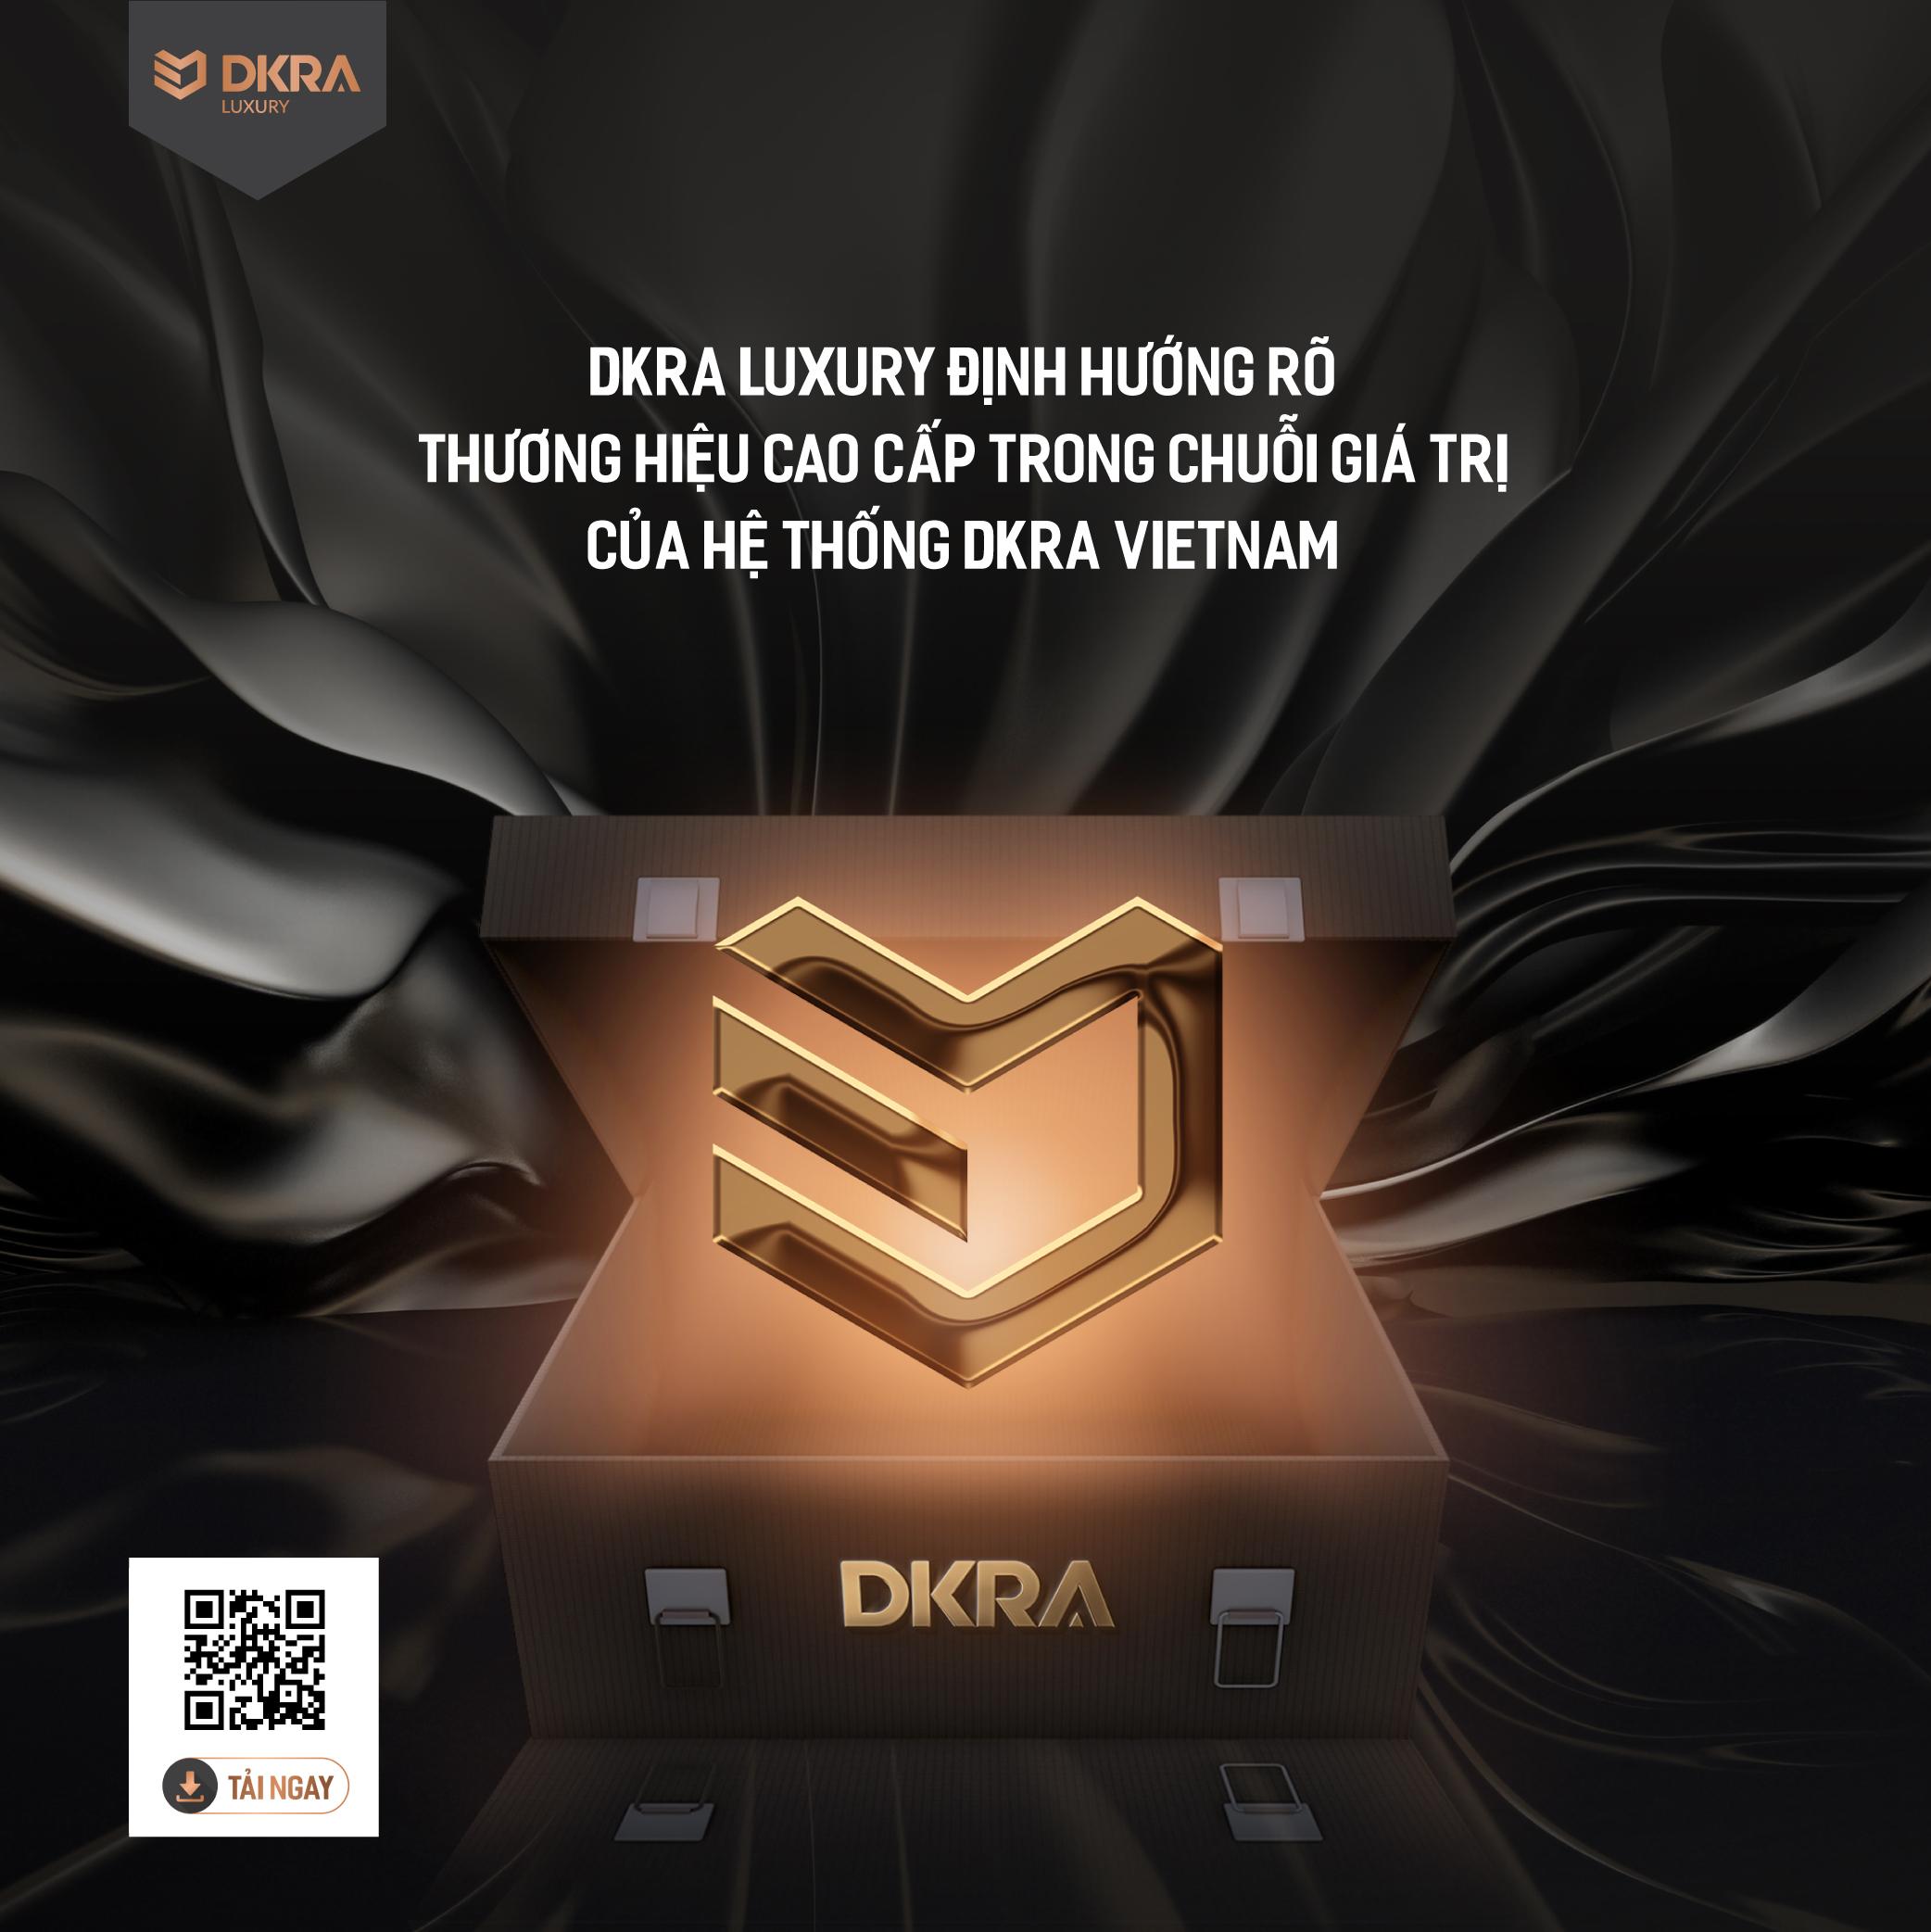 DKRA Luxury định hướng rõ thương hiệu cao cấp trong chuỗi giá trị của hệ thống DKRA Vietnam